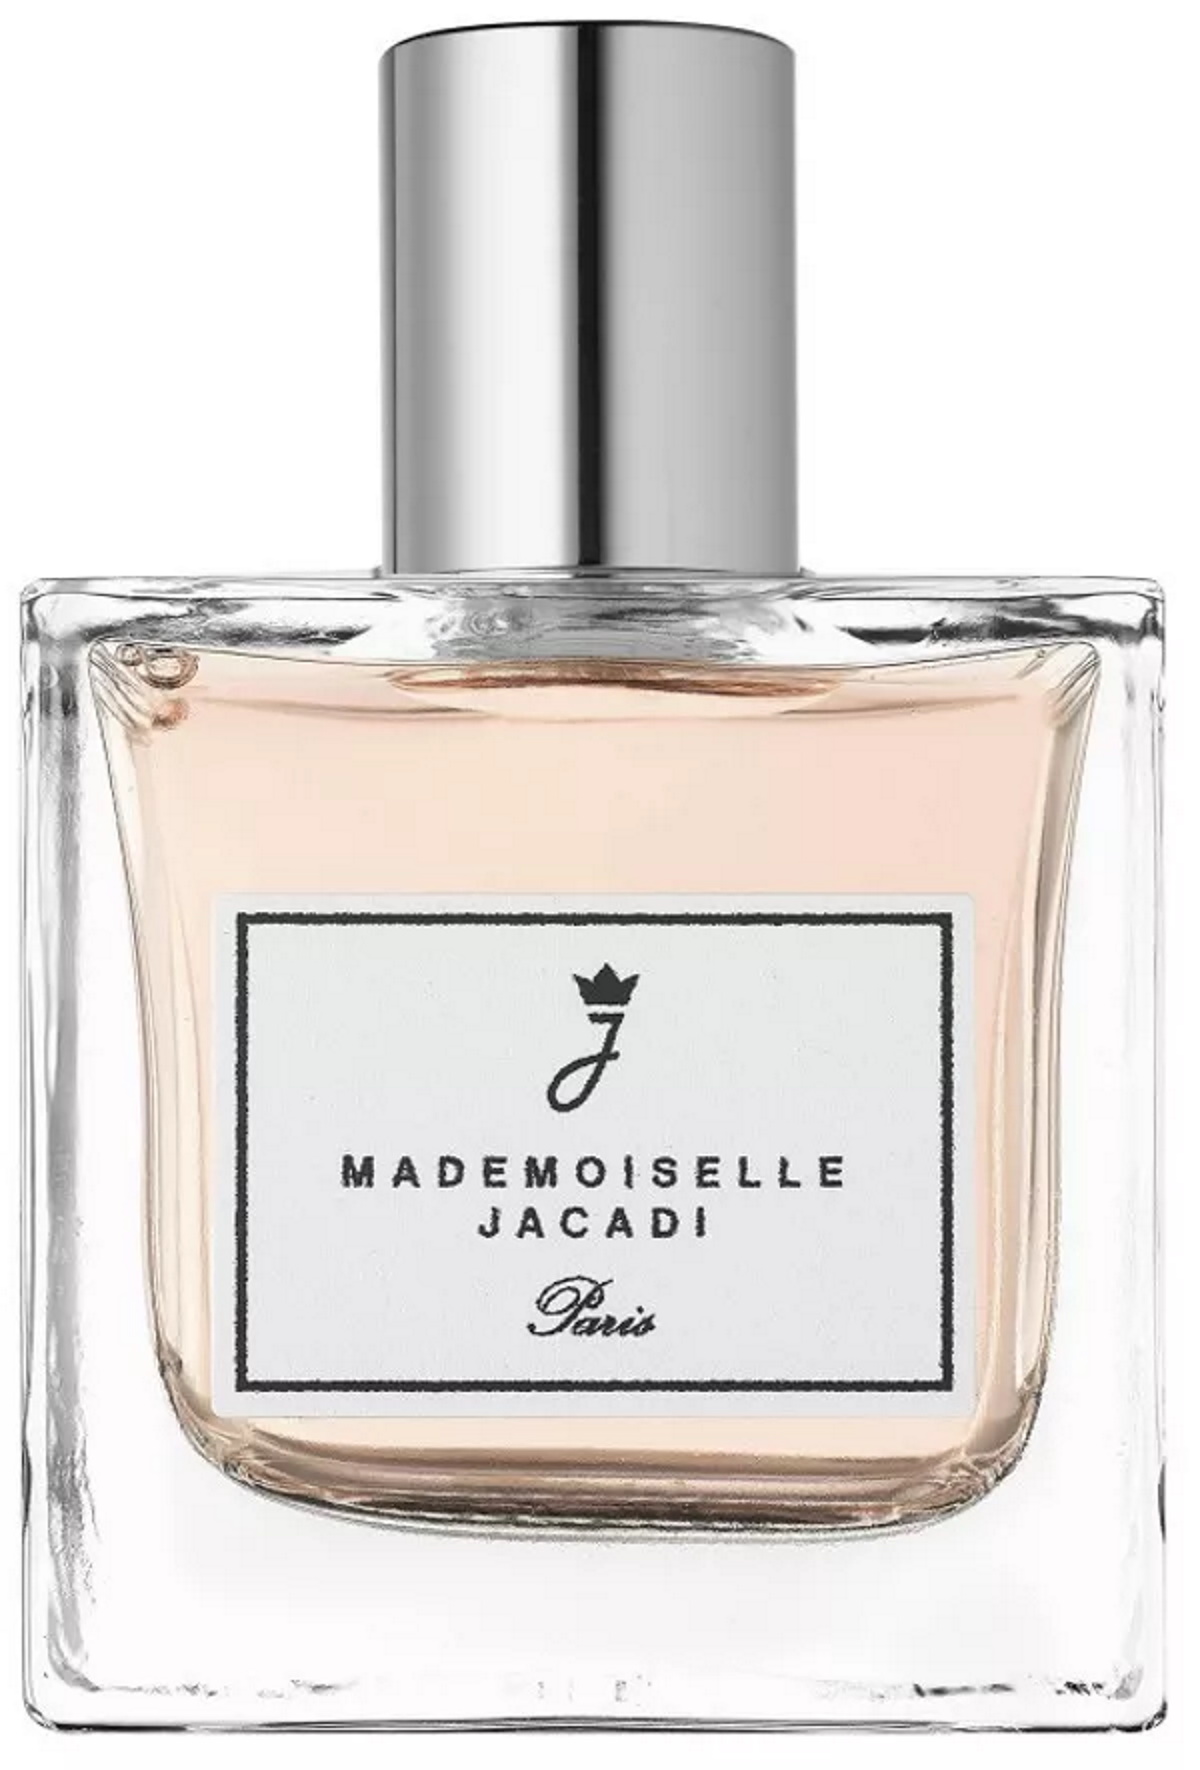 JACADI - Mademoiselle parfum cadeau enfant